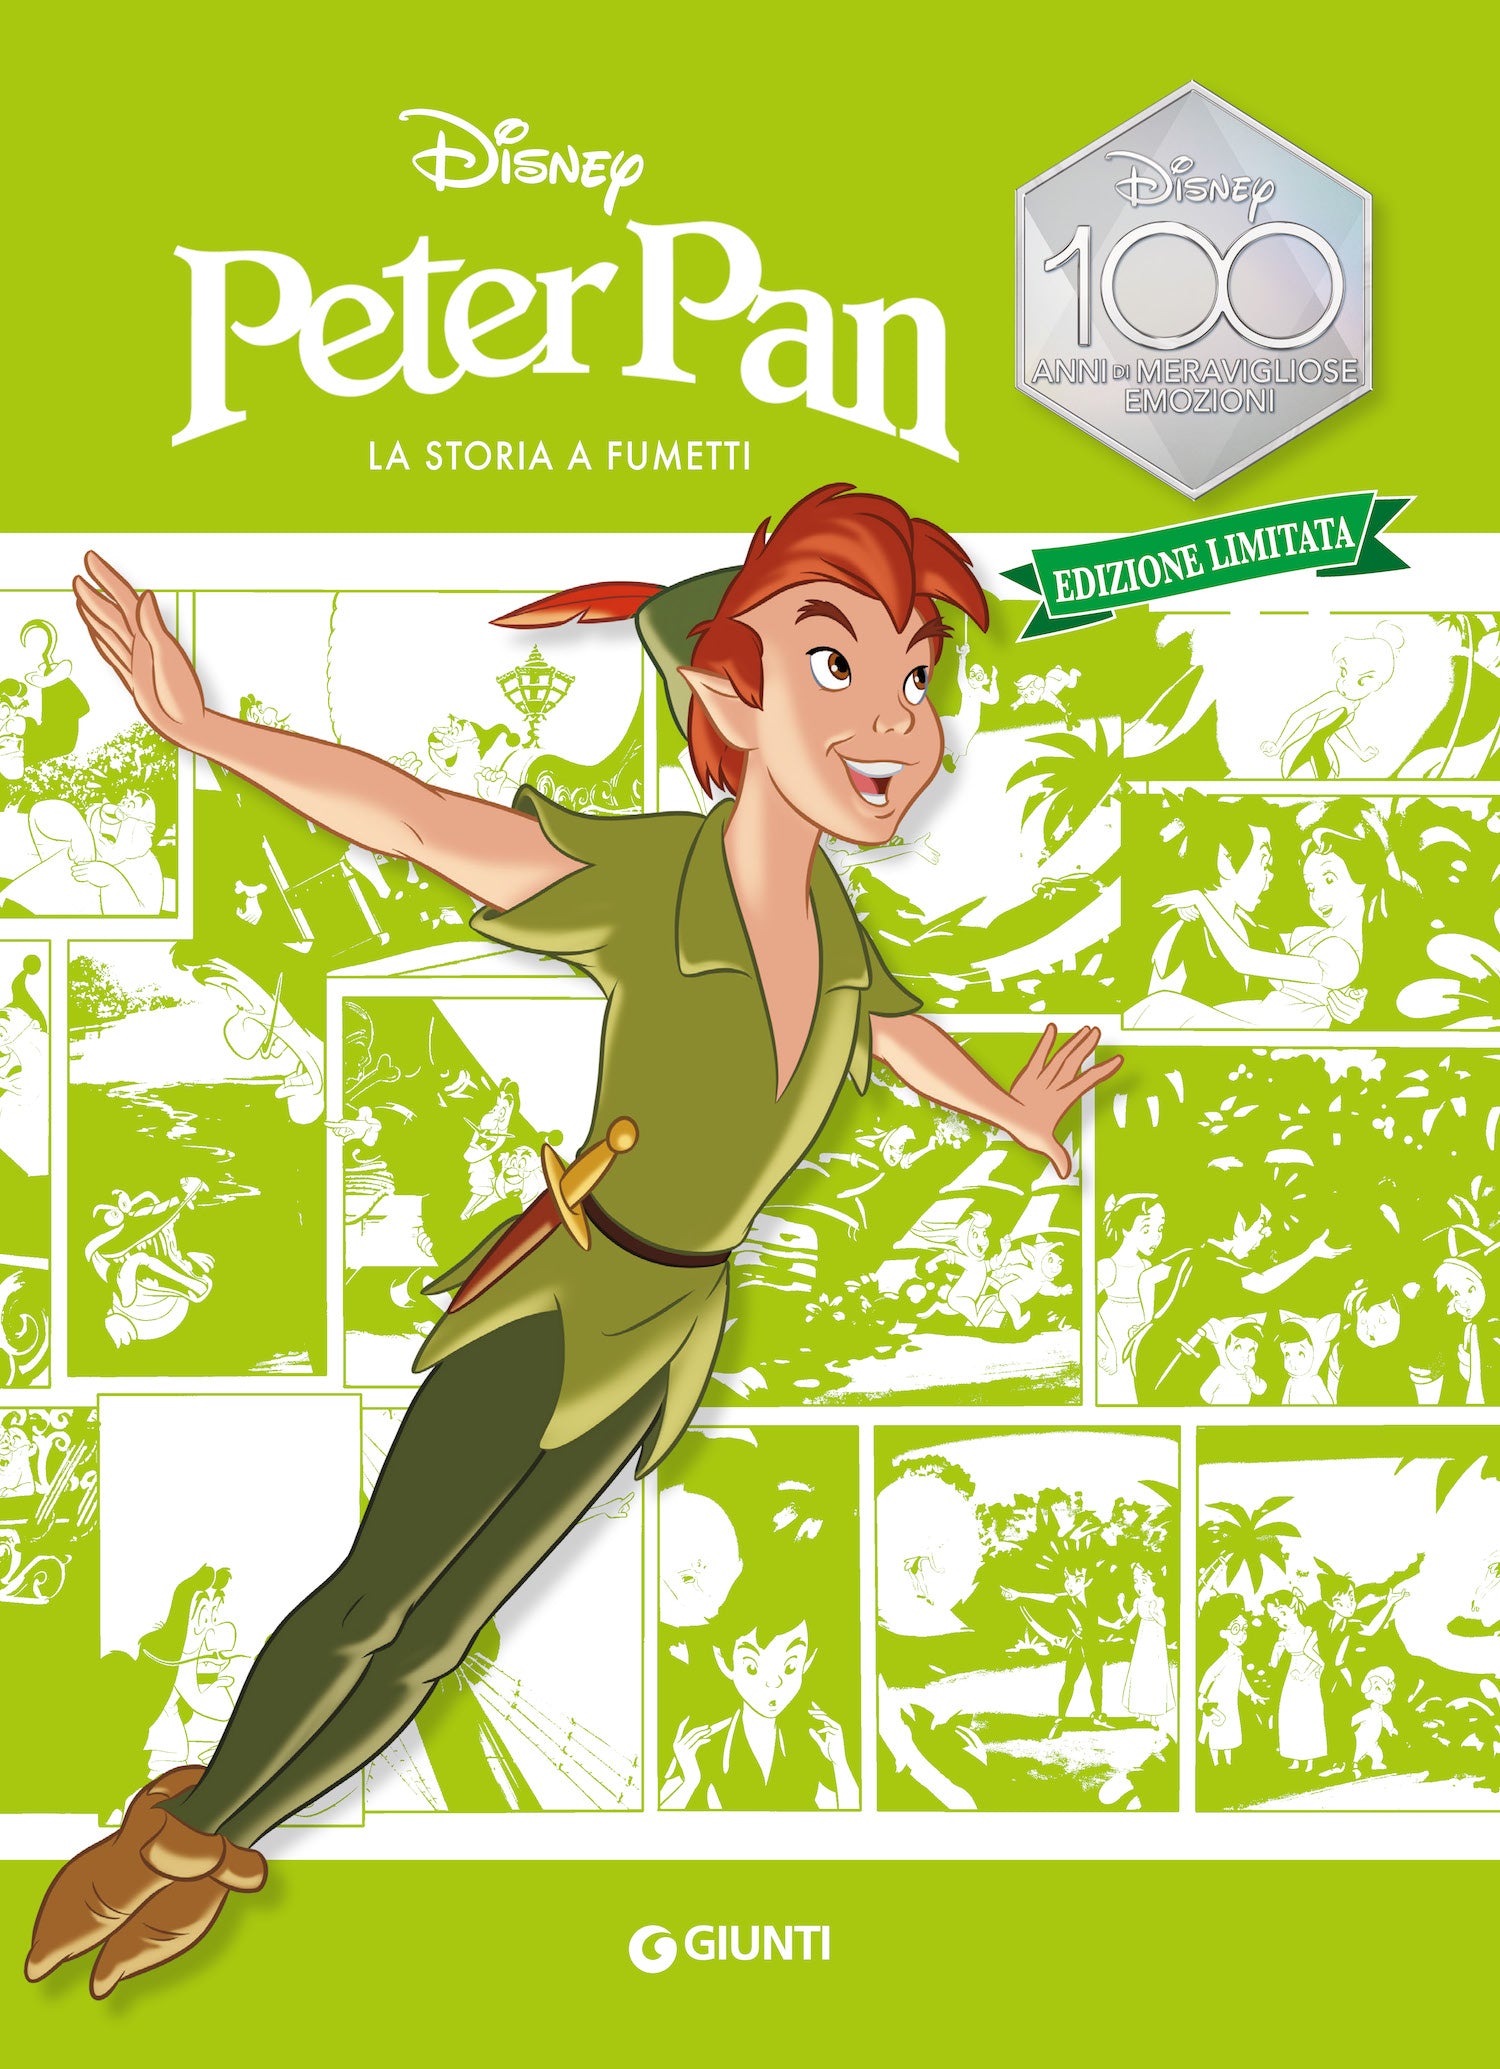 Peter Pan La storia a fumetti Edizione limitata. Disney 100 Anni di meravigliose emozioni